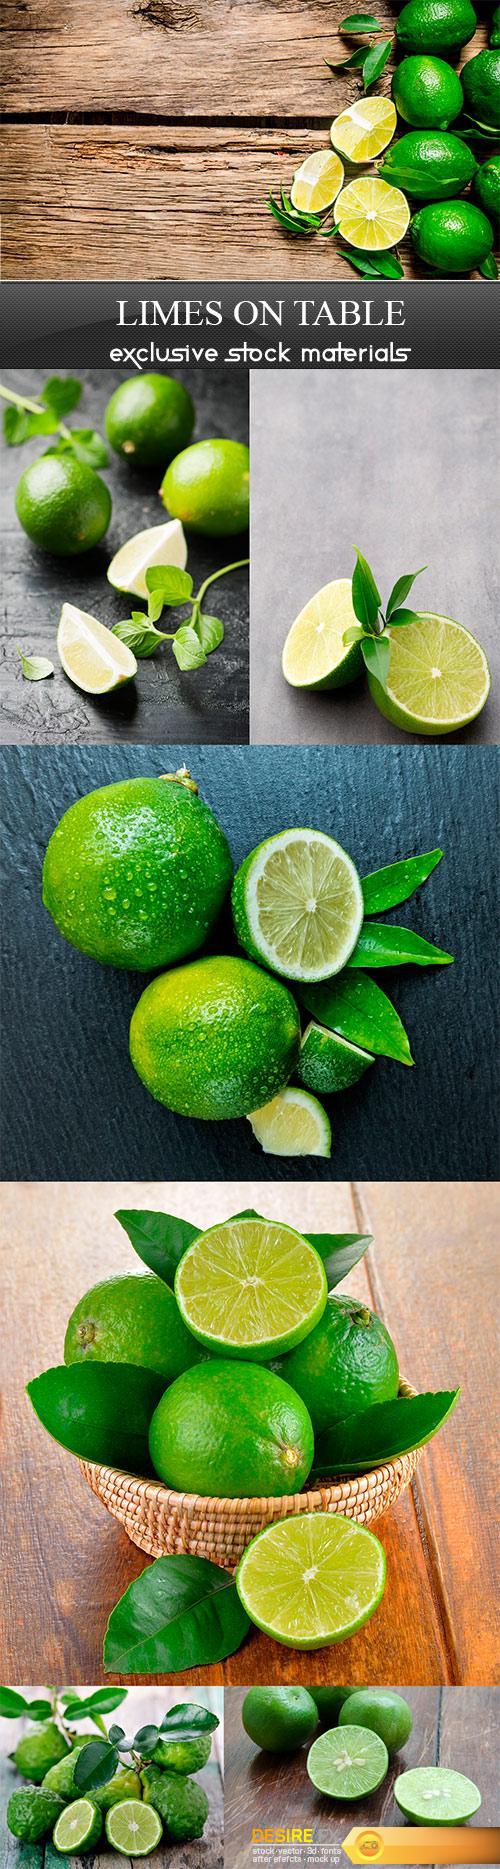 Limes on the table - 7UHQ JPEG